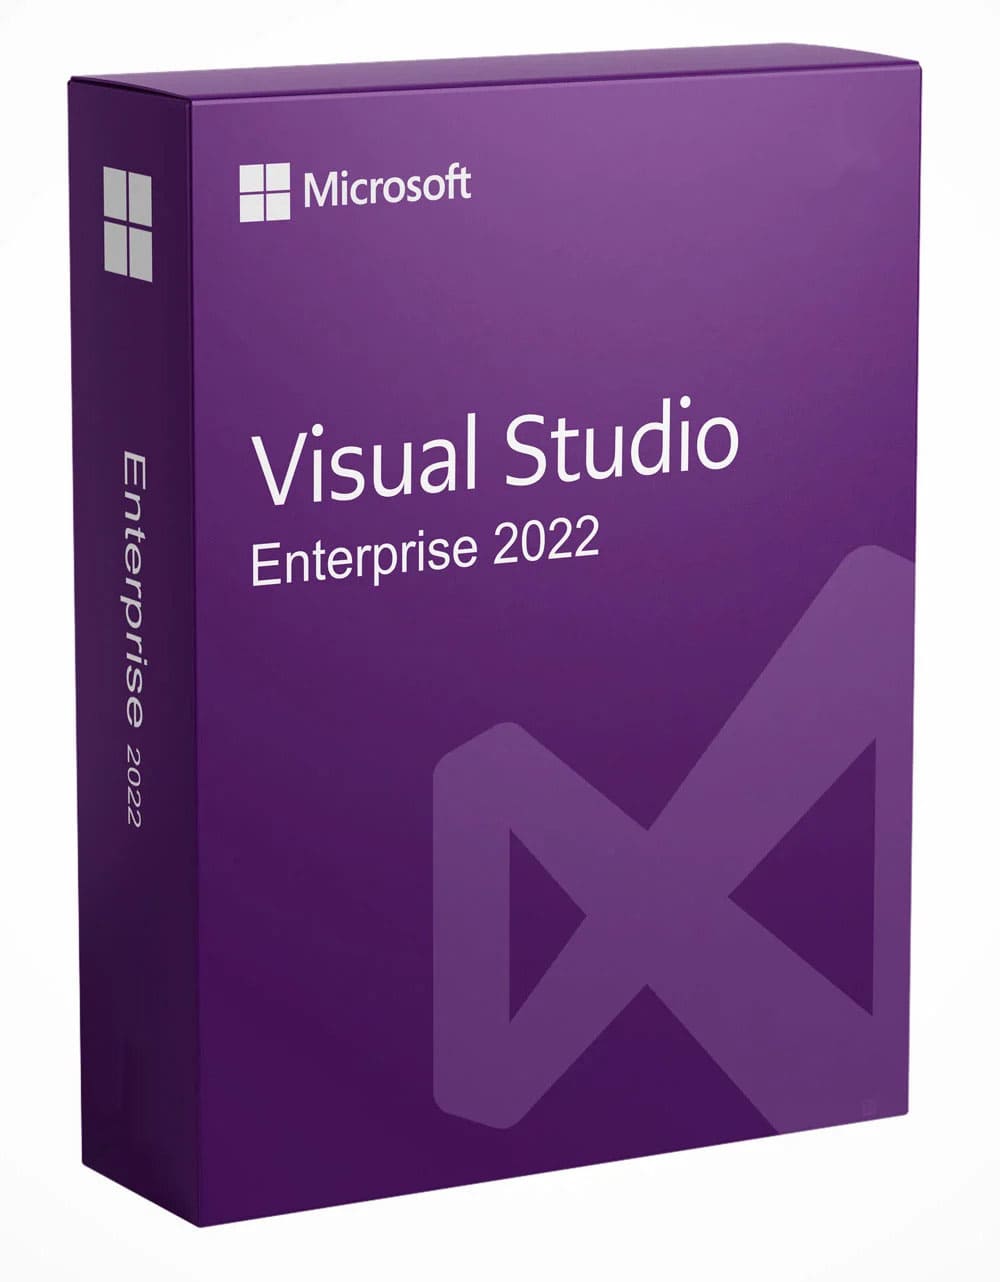 скачать Visual Studio senterprise 2022